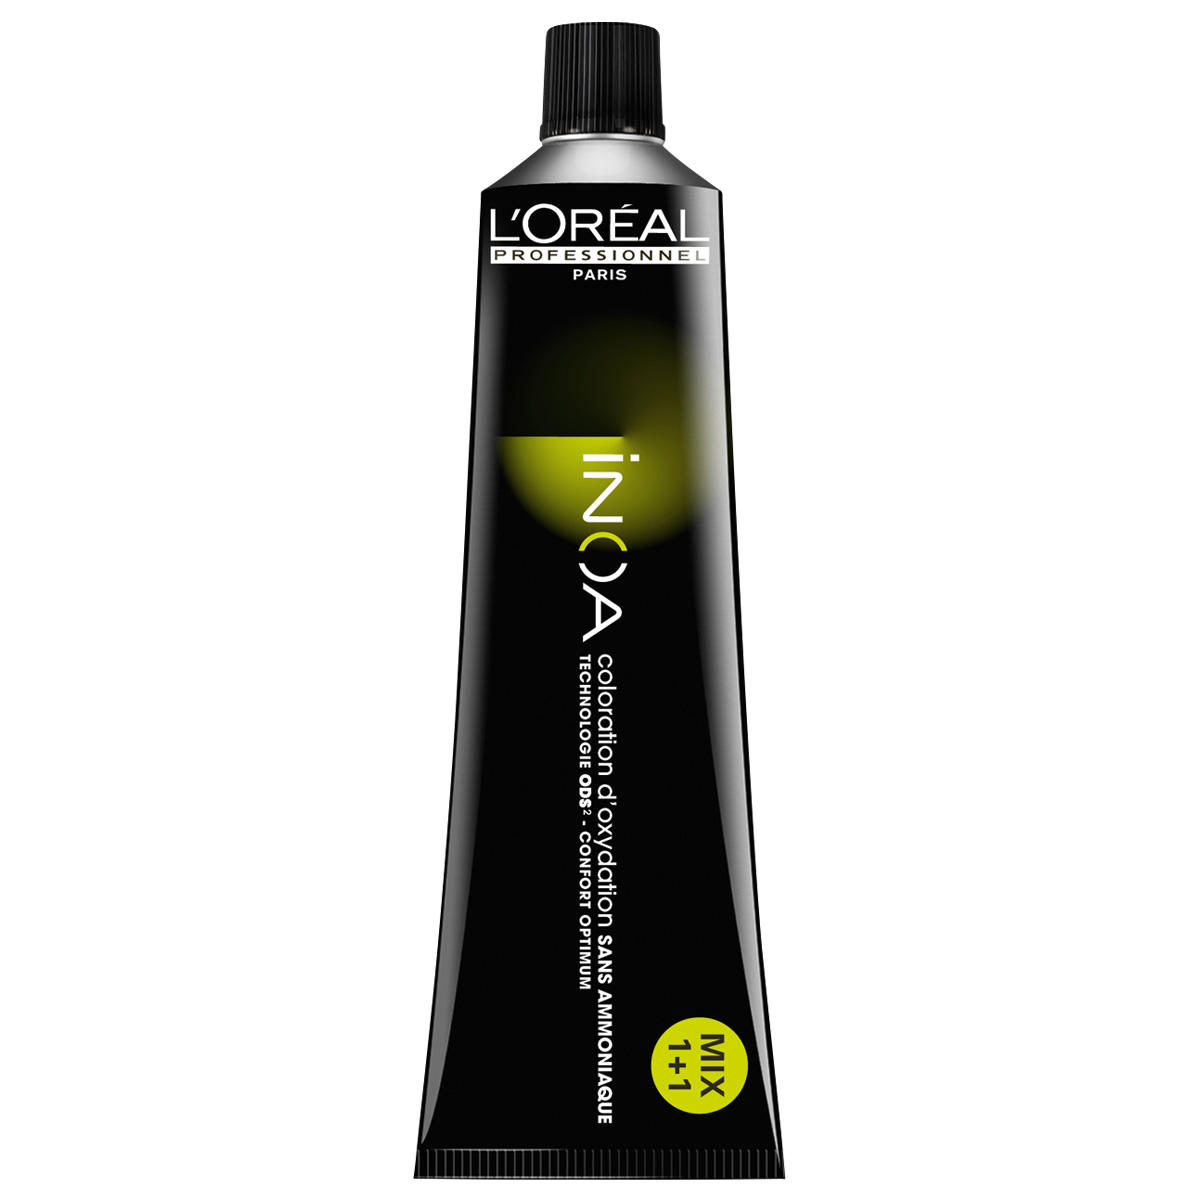 L'Oréal Professionnel Paris Coloration 5,8 brun clair moka, Tube 60 ml - 1